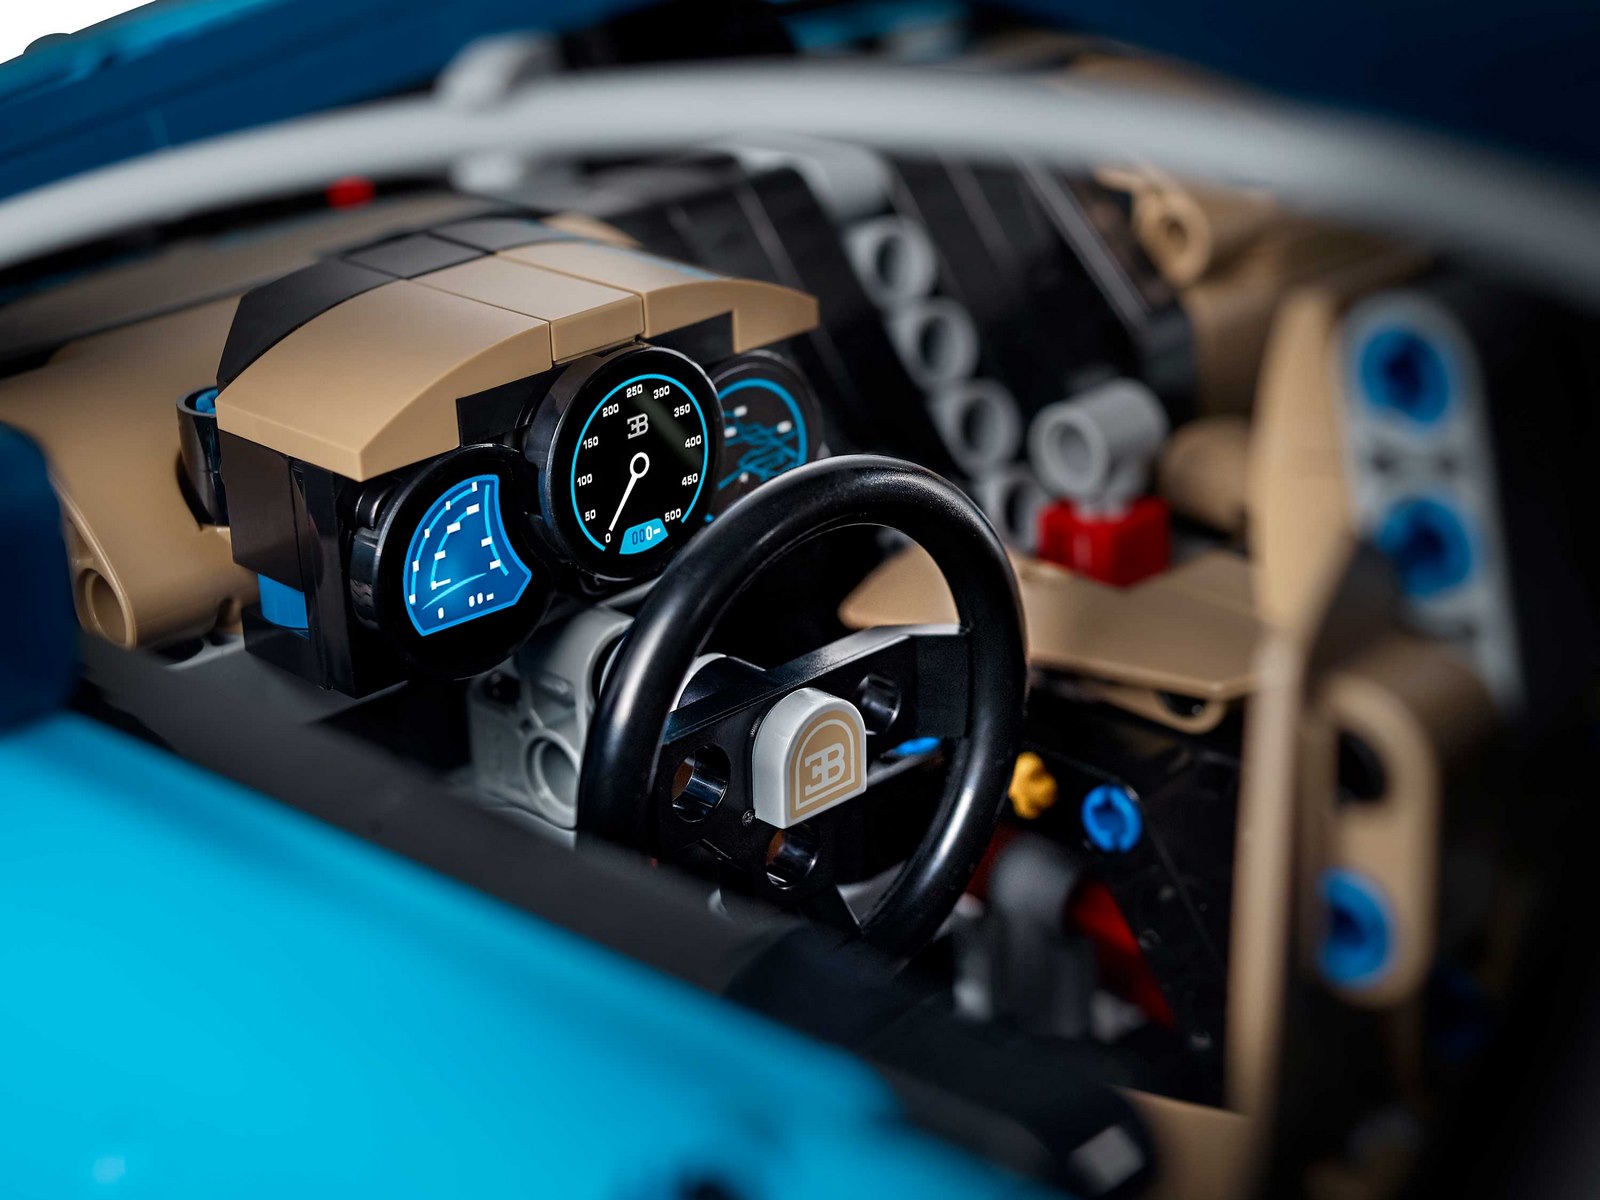 Конструктор Lion King «Bugatti Chiron» 180103 (Technic 42083) / 4028 деталей